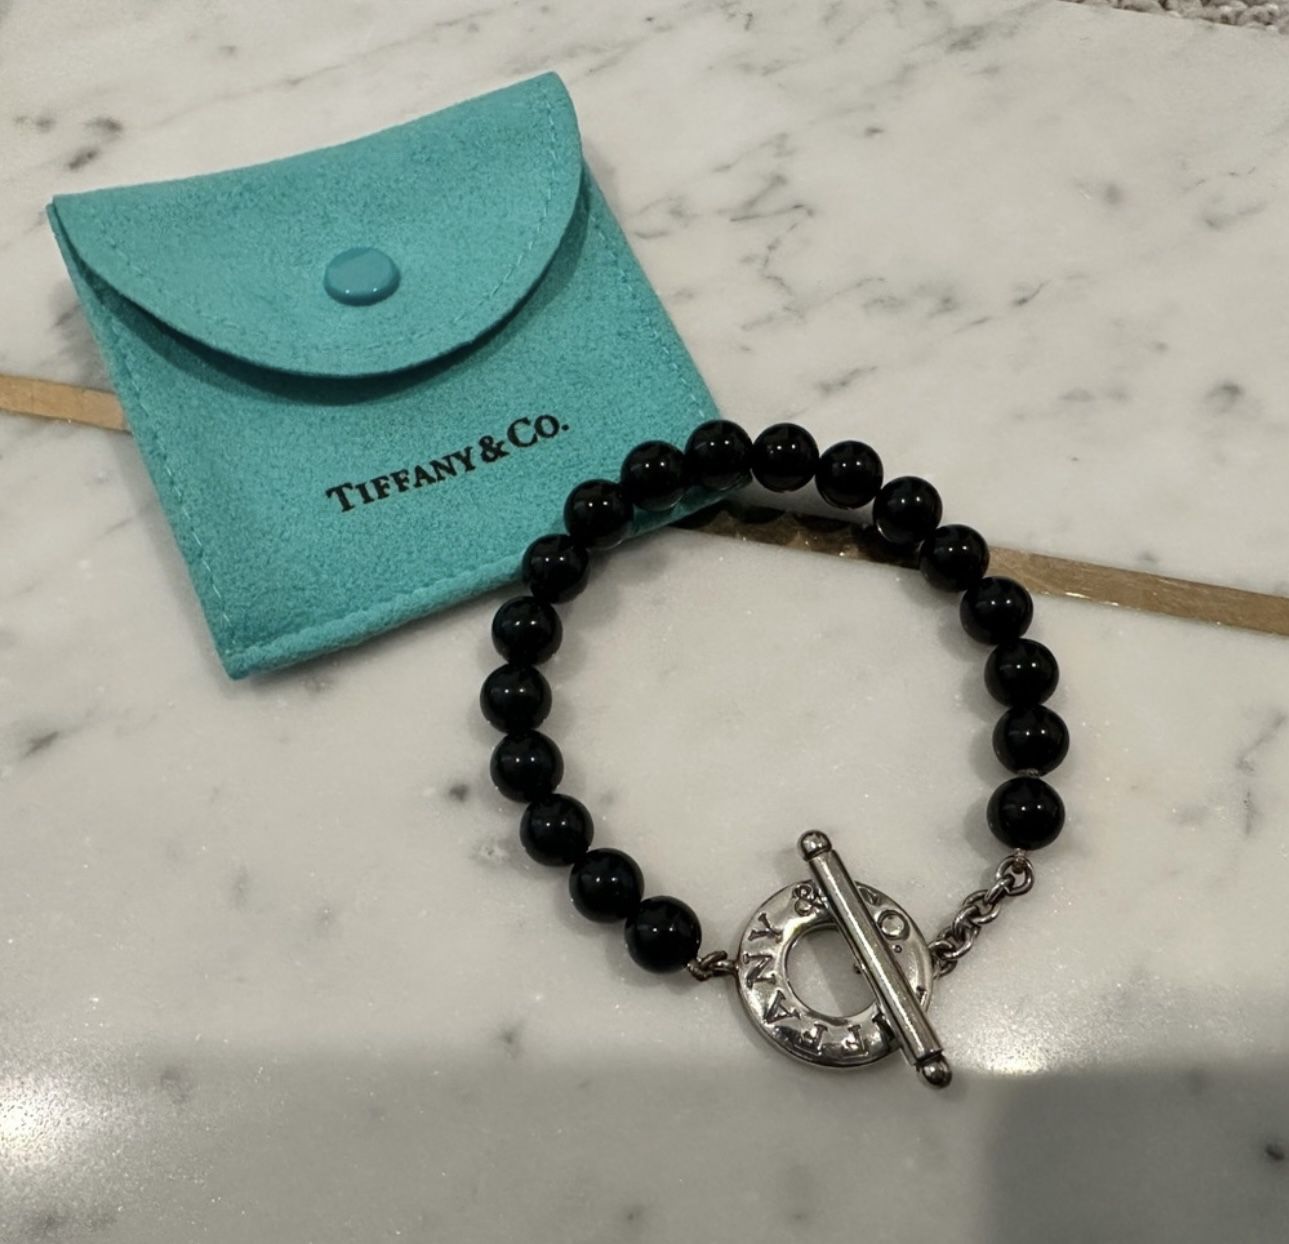 Tiffany & Co Beads Toggle Bracelet Black Onyx